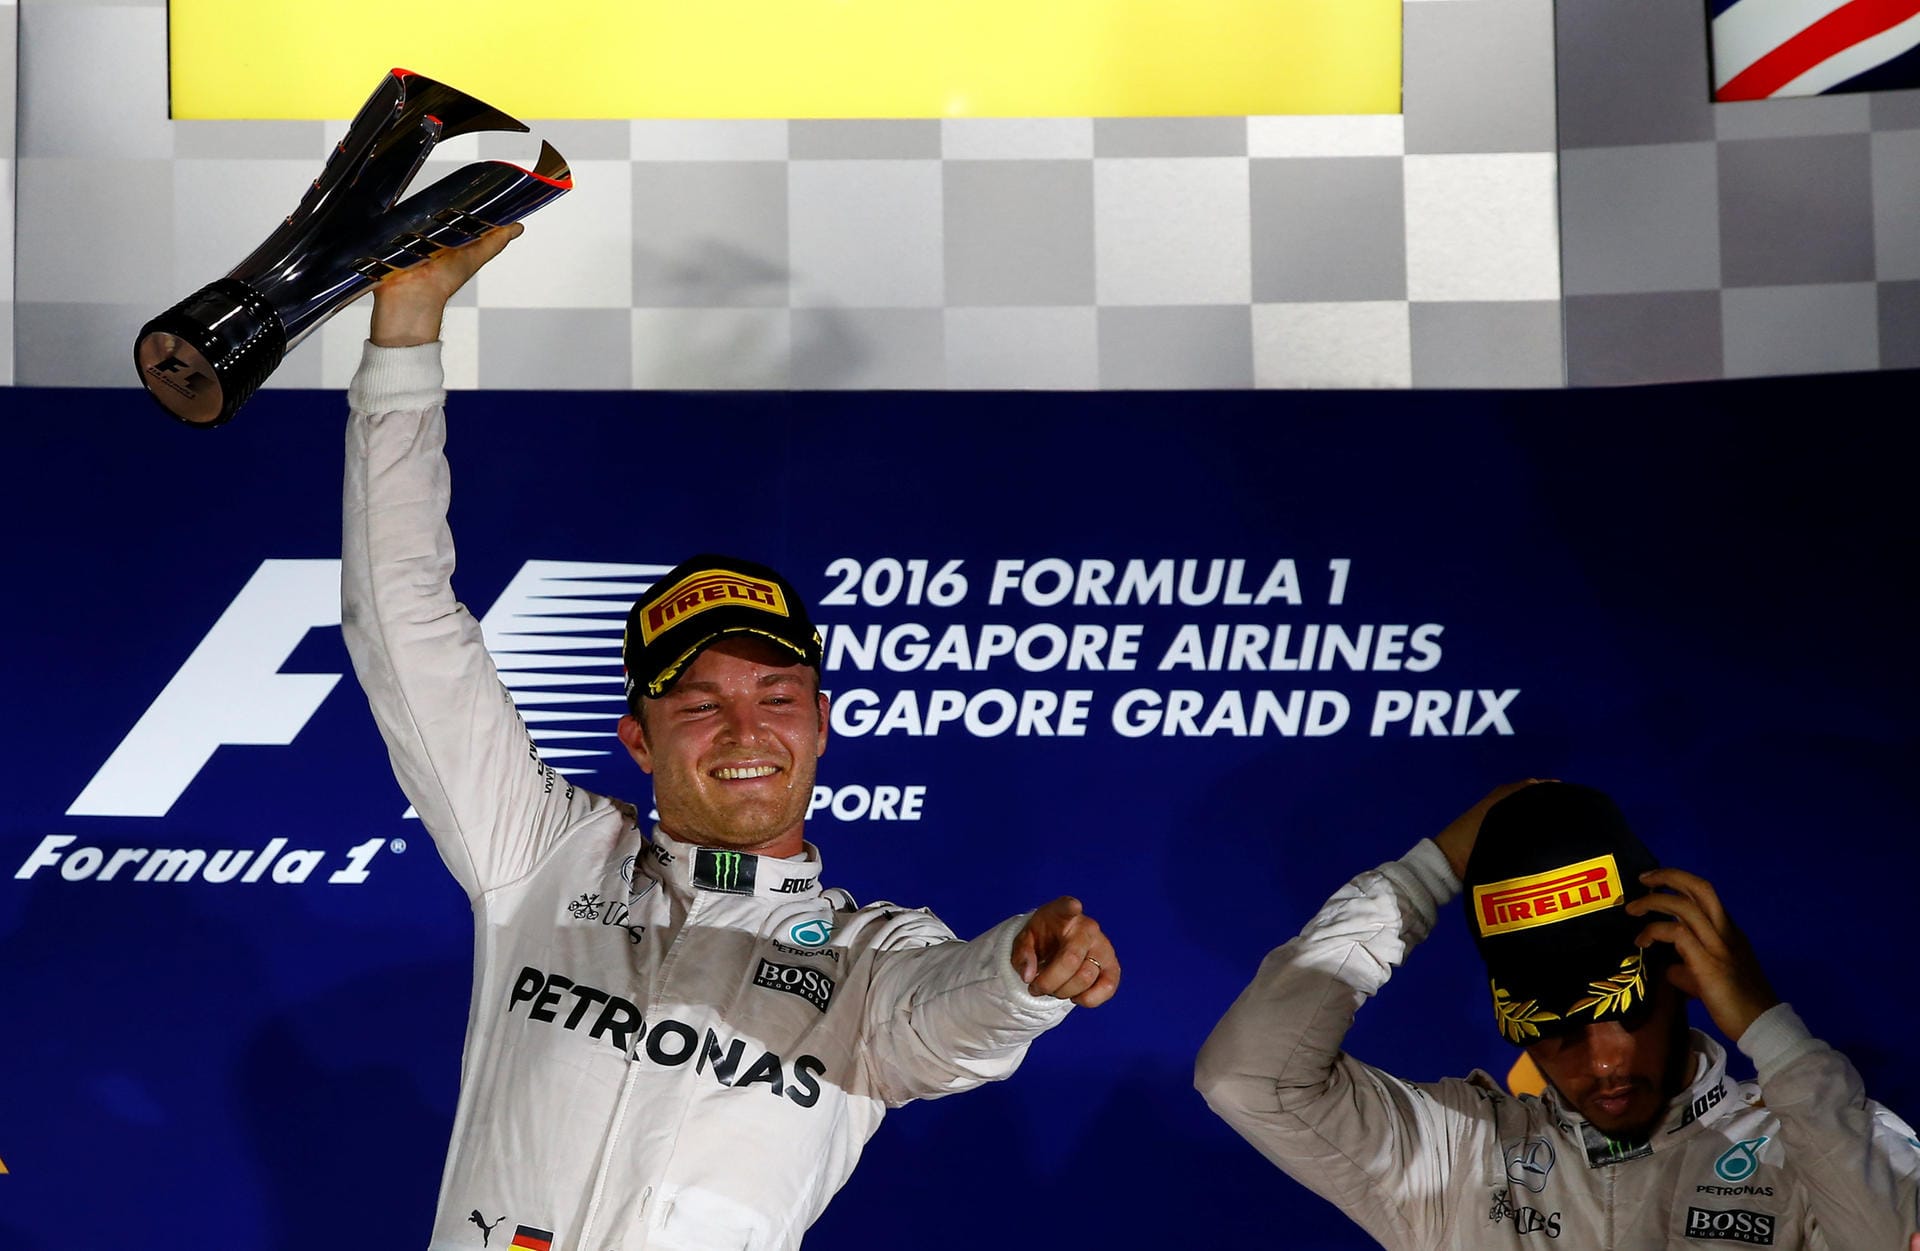 Oben auf: Mit dem Sieg in Singapur hat Nico Rosberg wieder die Führung in der WM-Wertung übernommen.